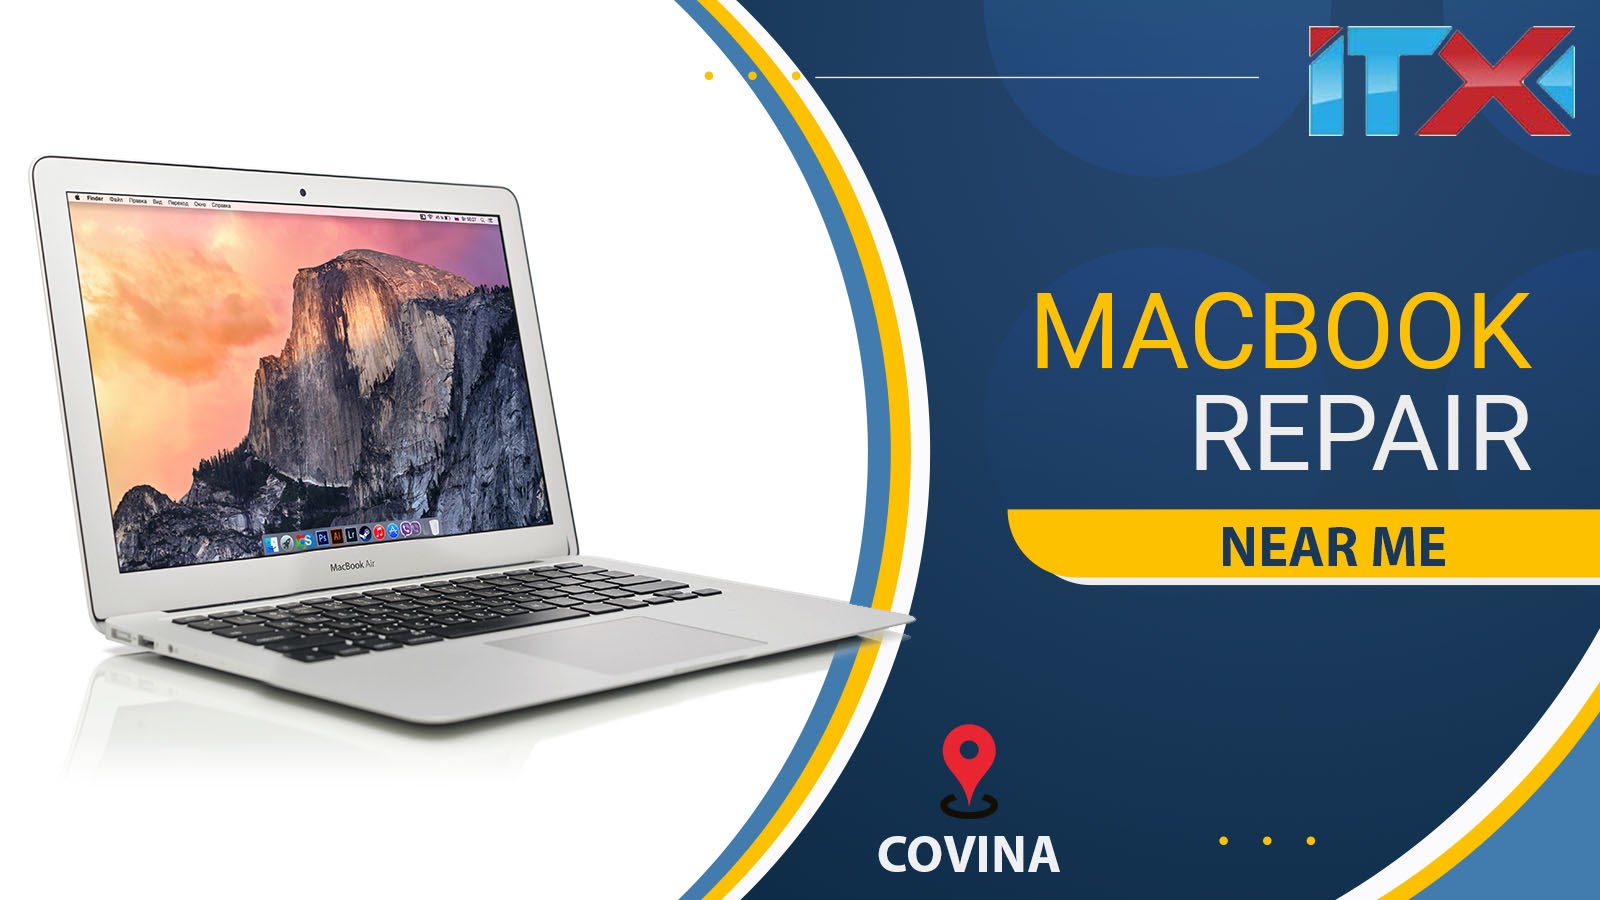 Macbook Repair near Me Covina